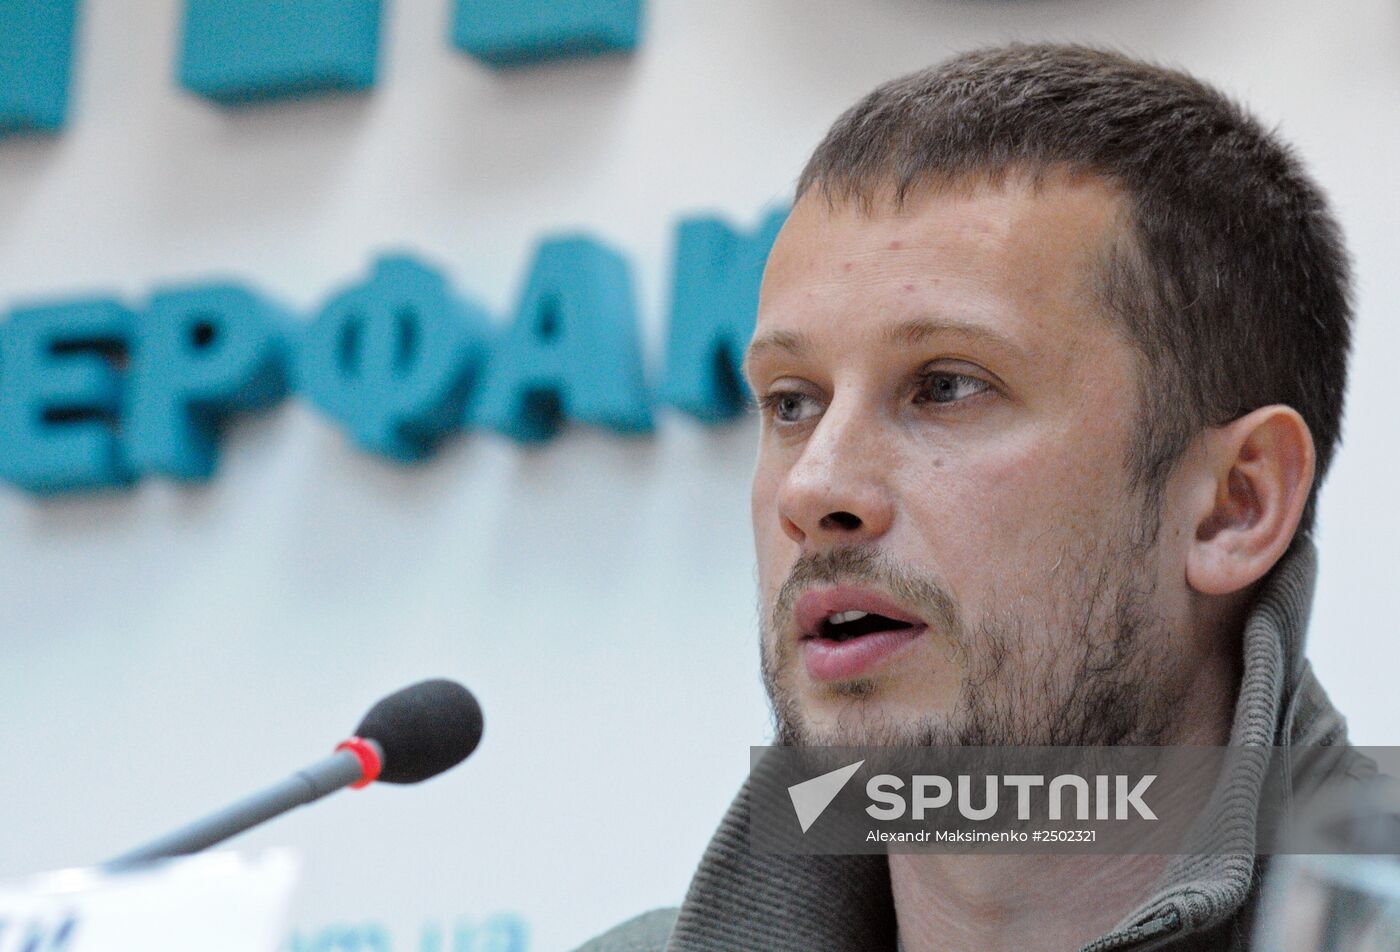 Joint press conference of MP nominees Shkiryak and Biletsky